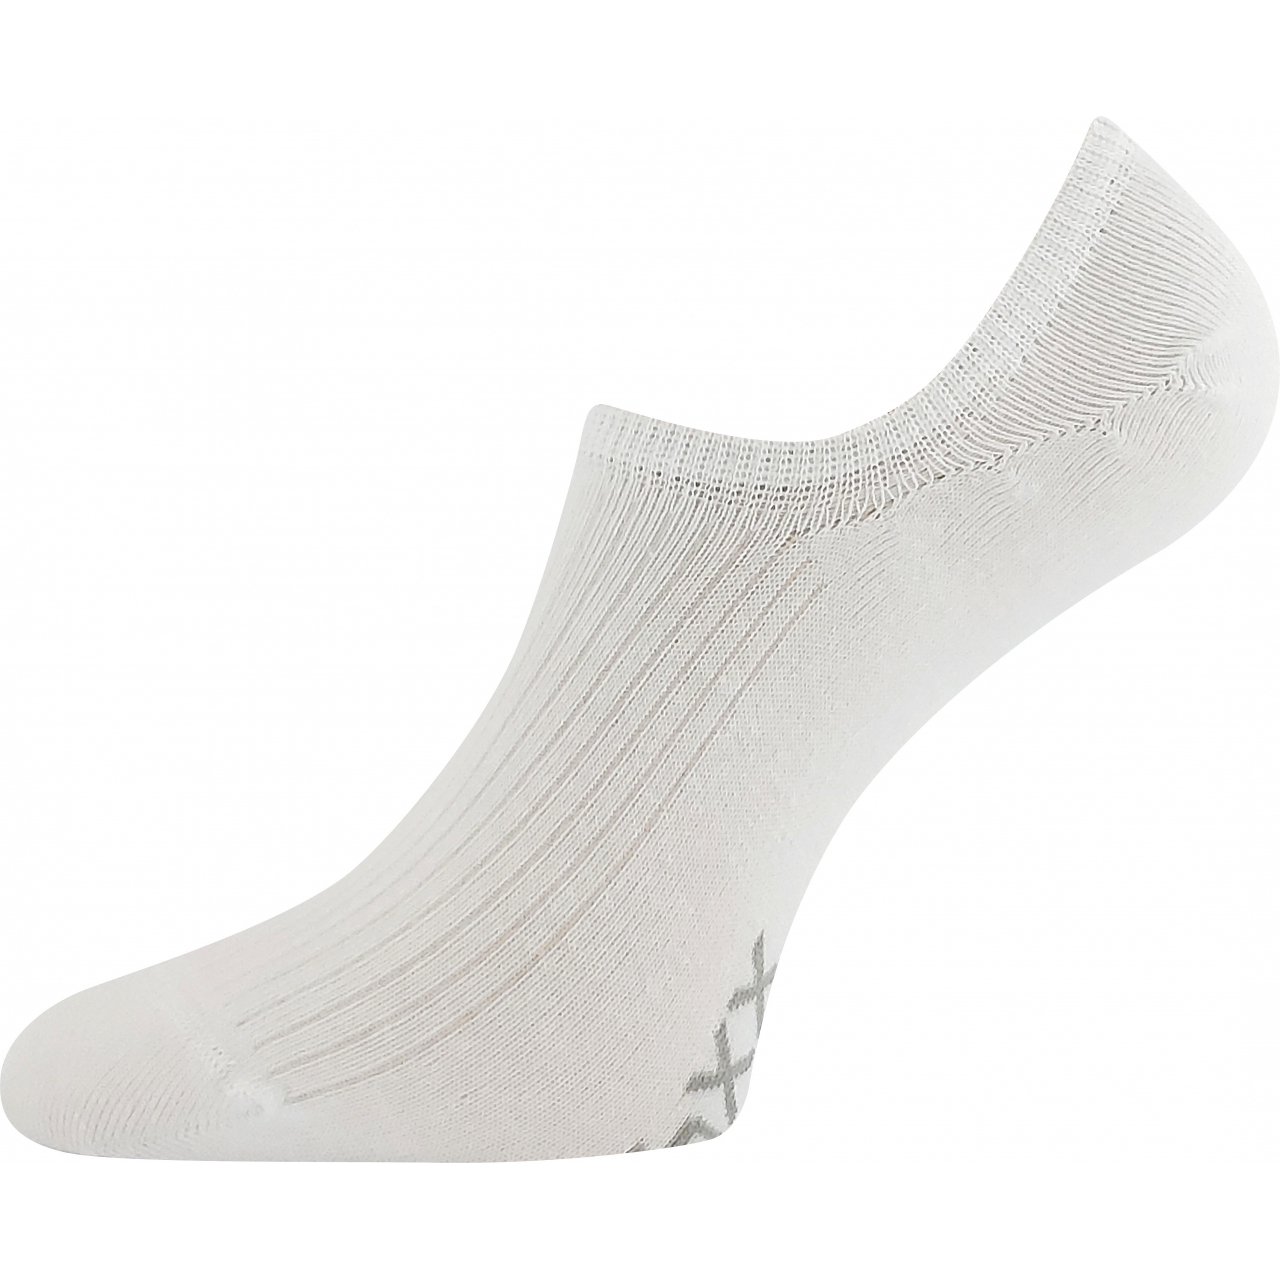 Ponožky unisex krátké Voxx Hagrid - bílé, 43-46